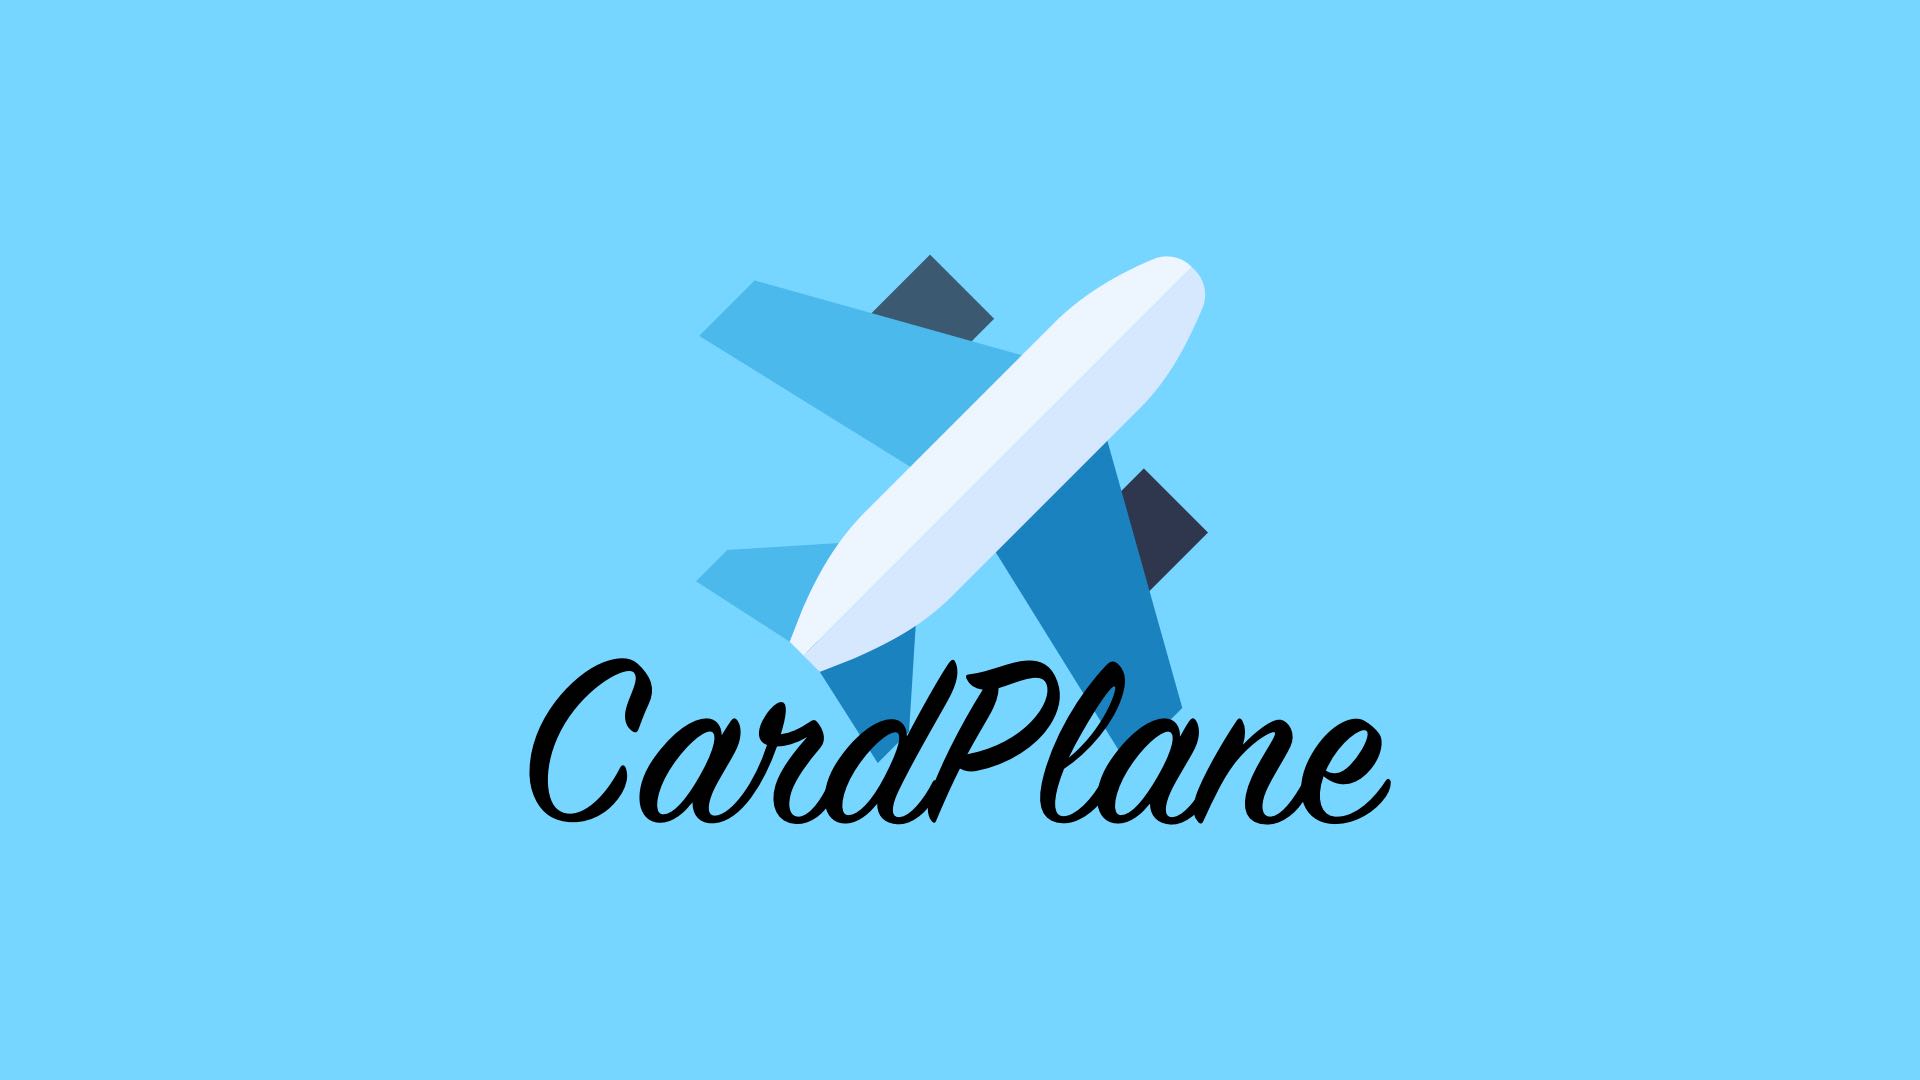 CardPlane